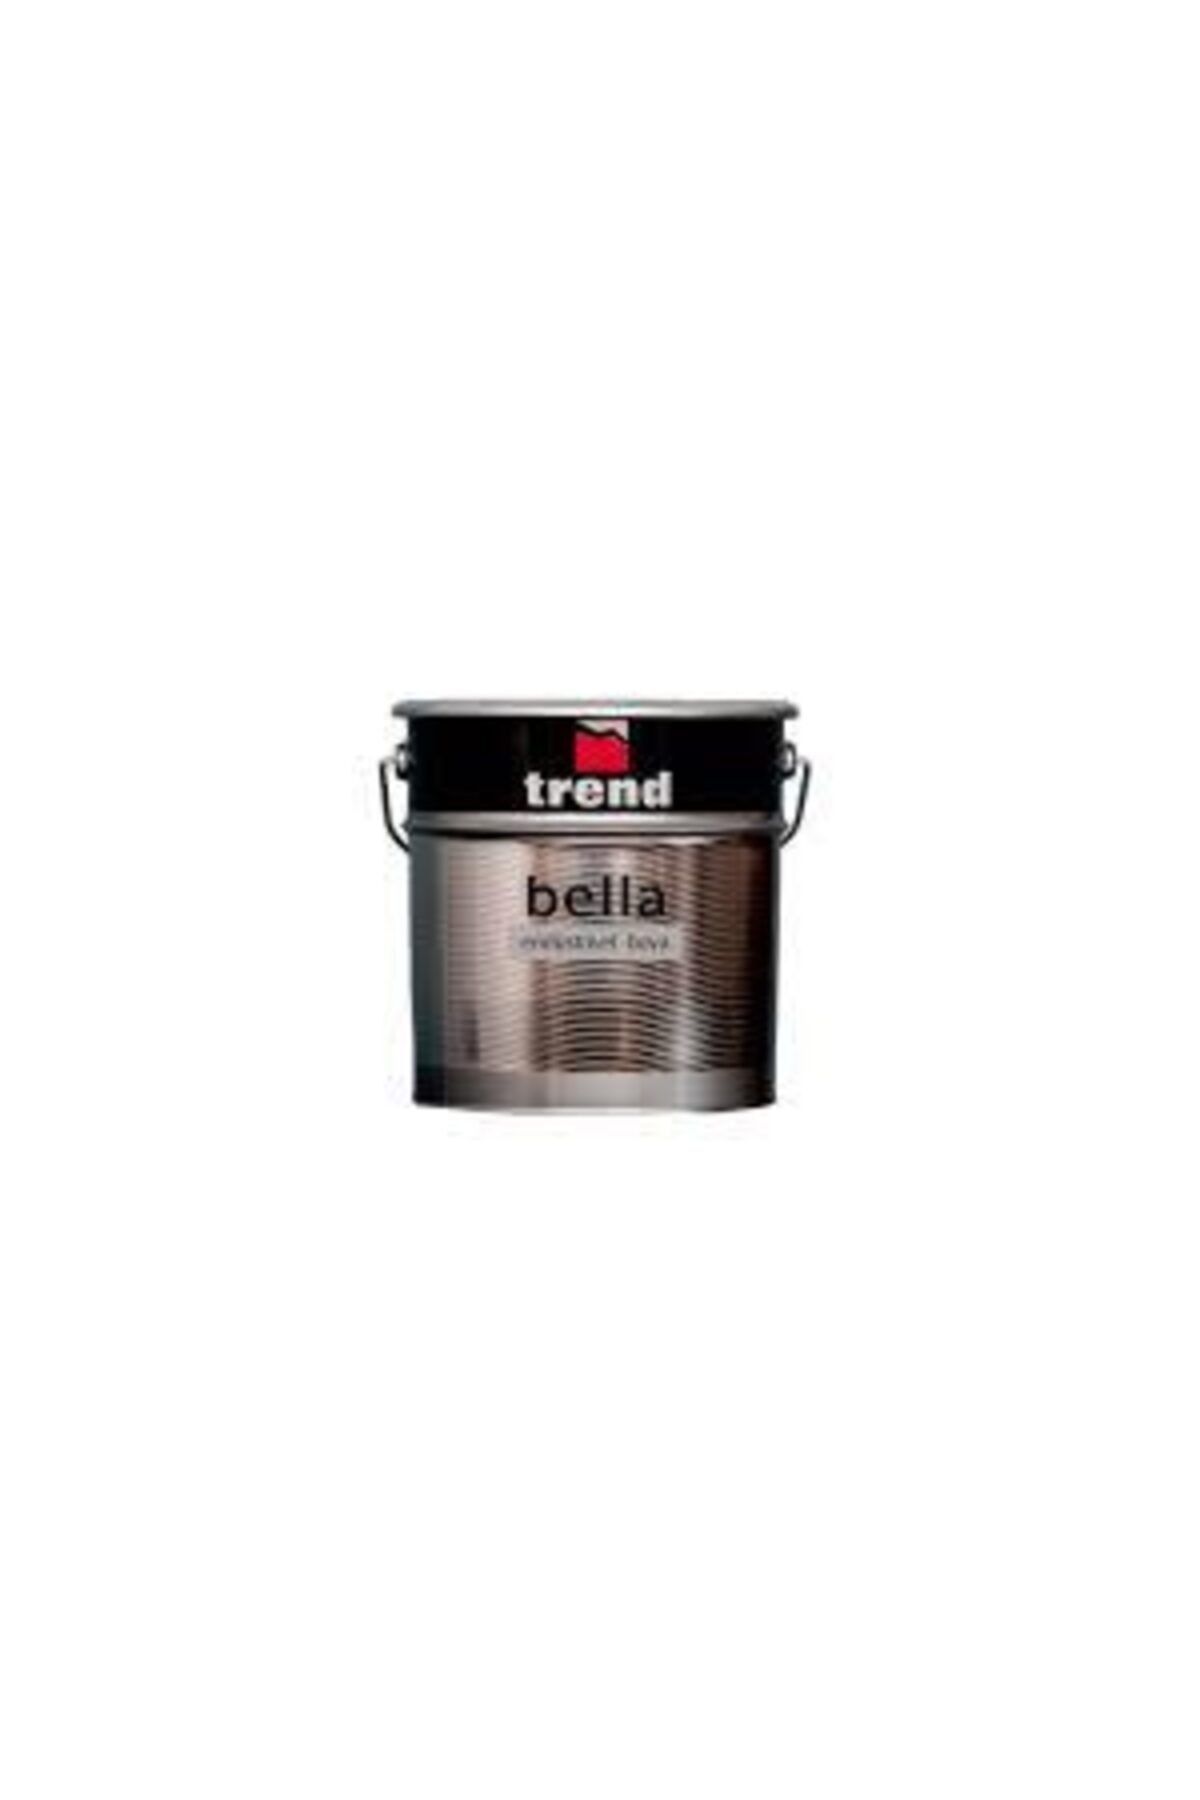 Bella Siyah Renk Trend Sentetik Yağlı Boya 250 g